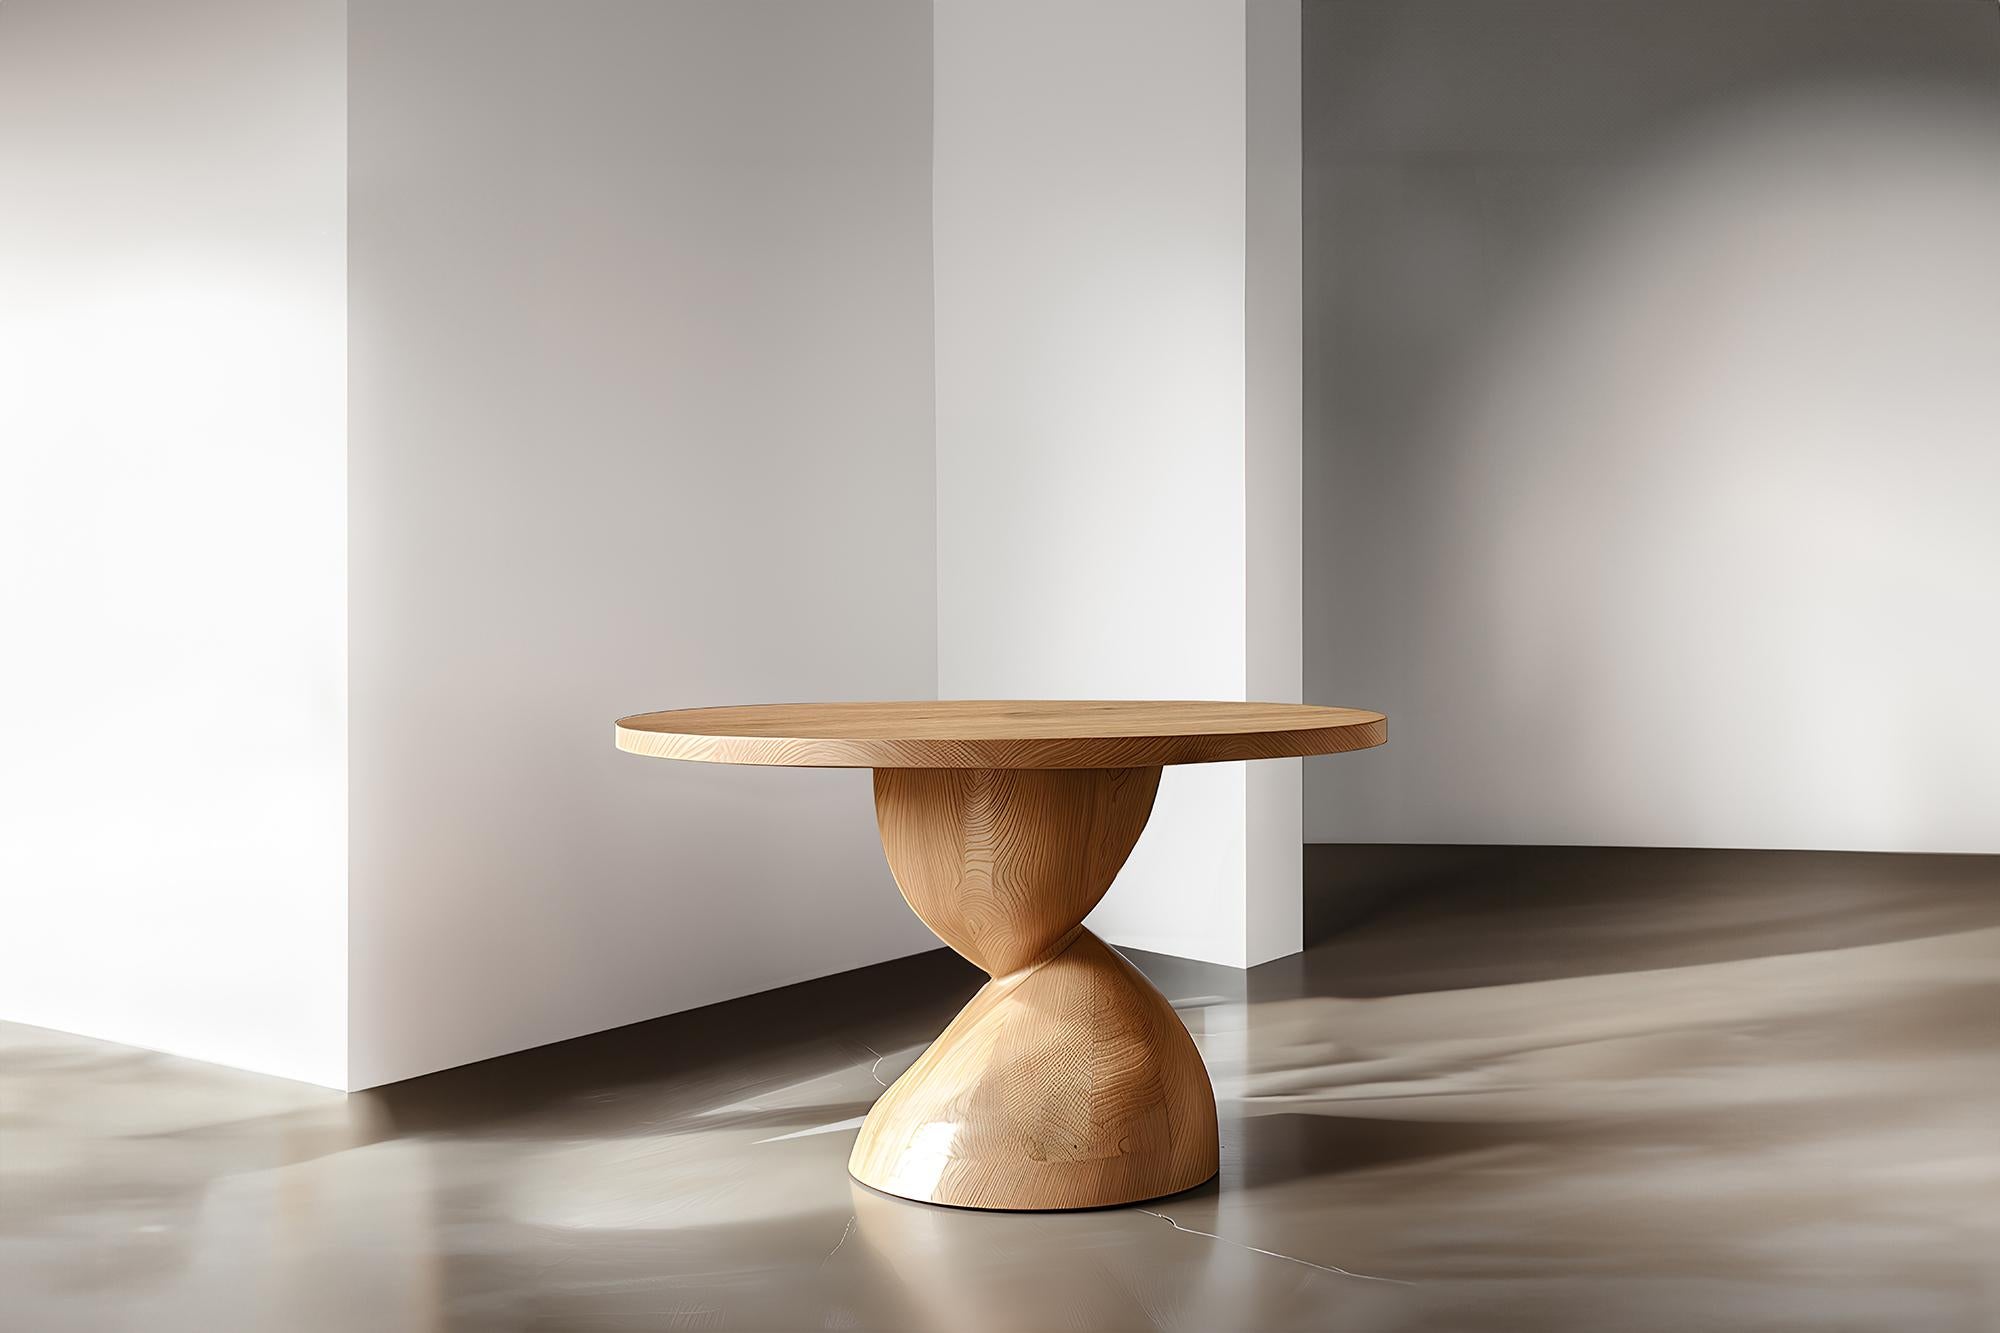 Tables de salle à manger, Socle's Solid Wood No18, Mealtime Masterpieces by NONO

--

Voici la 